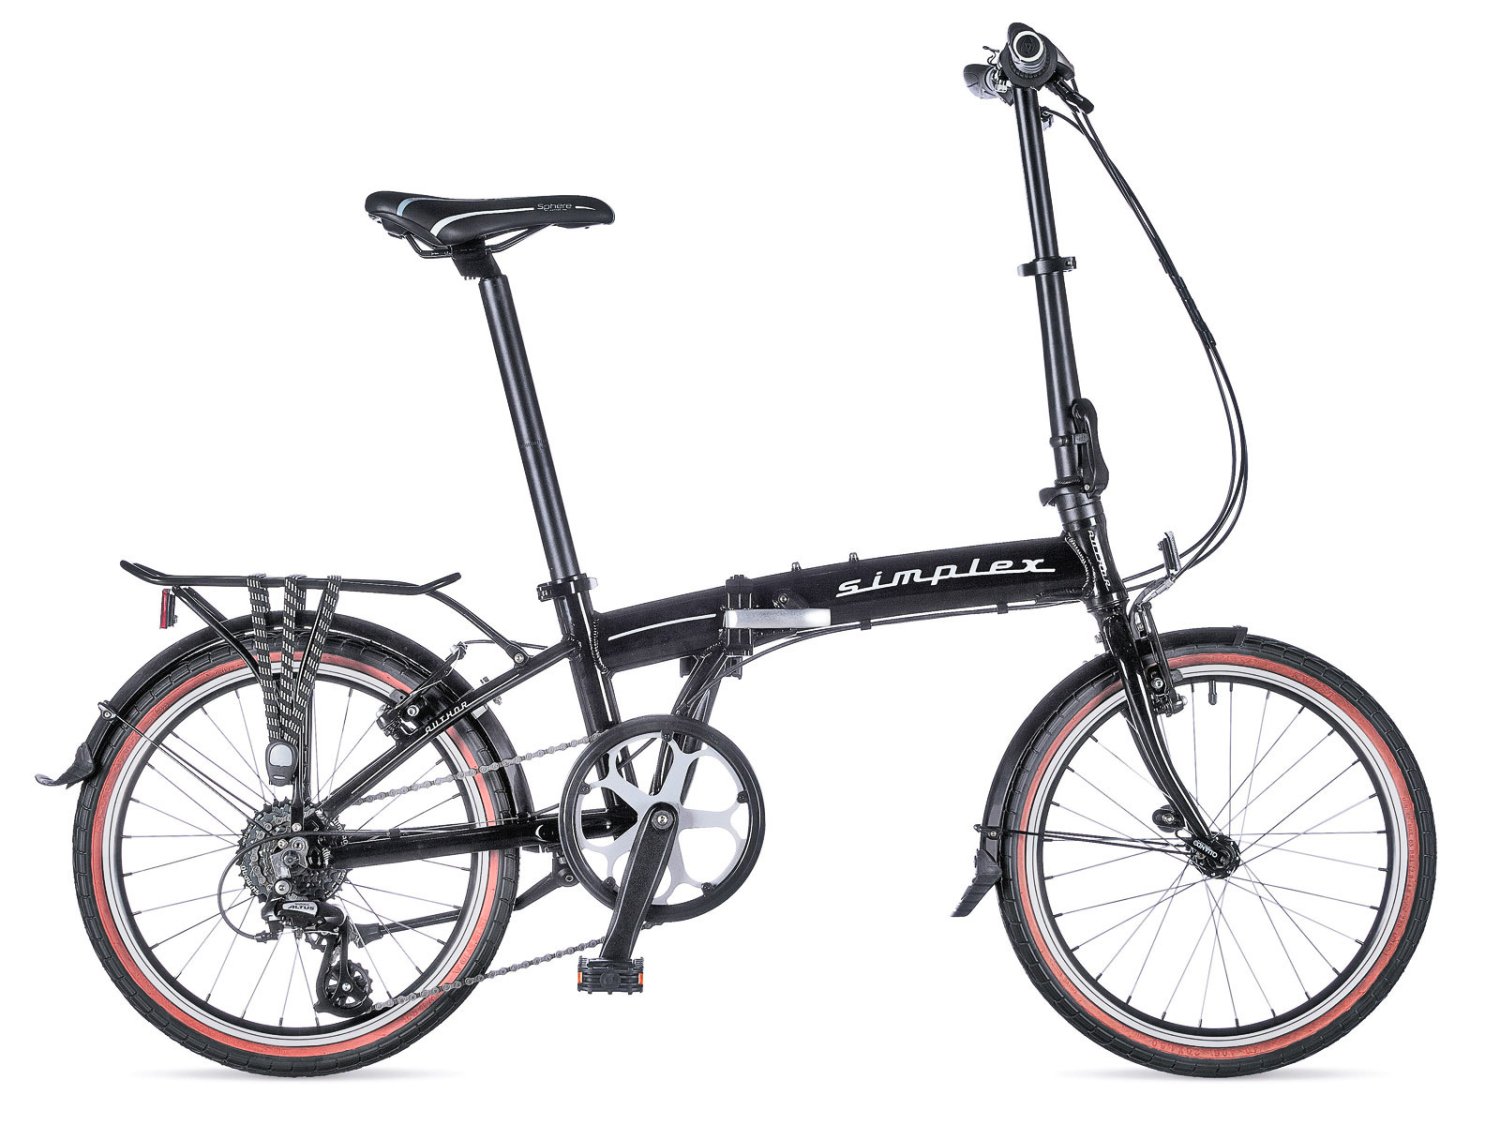 Рама велосипедная AUTHOR, алюминиевая, складная, с замком, для Simplex 2015, черная, 8-2015001 педали author apd 113 simplex складные алюминий пластик черно серые 8 34399092